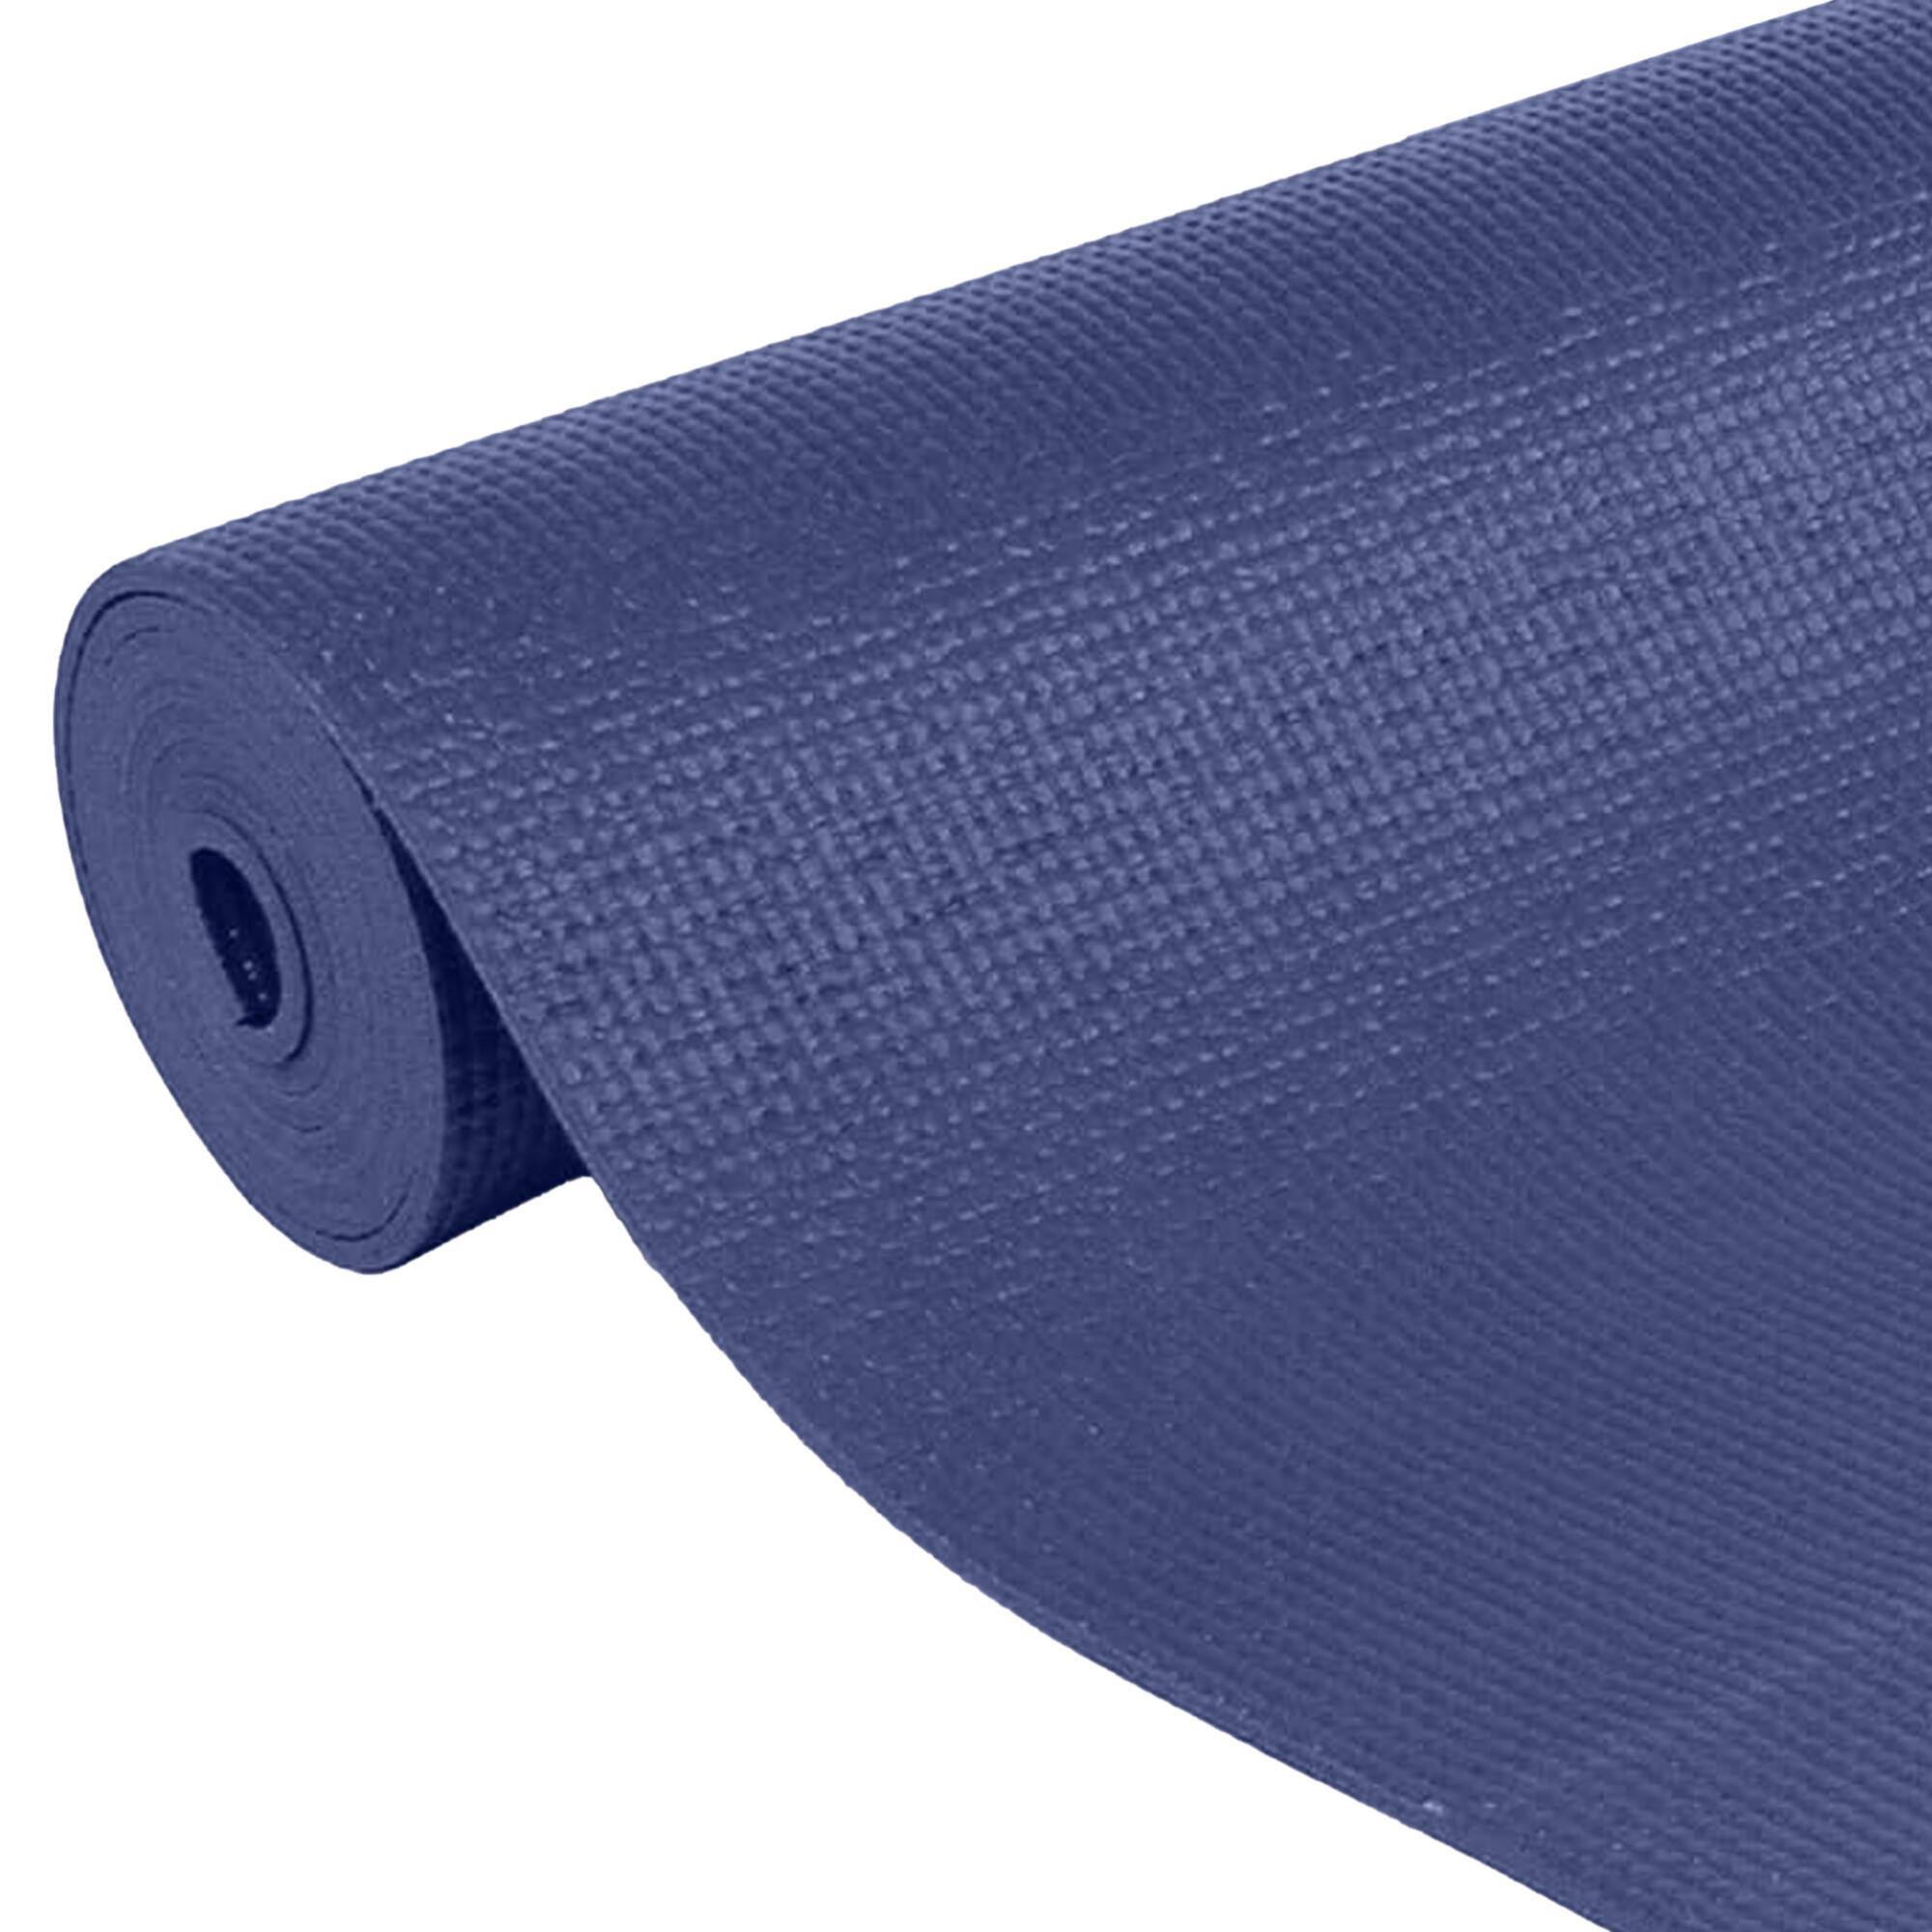 Warrior II Plus Yoga Mat (Dark Blue) 2/3